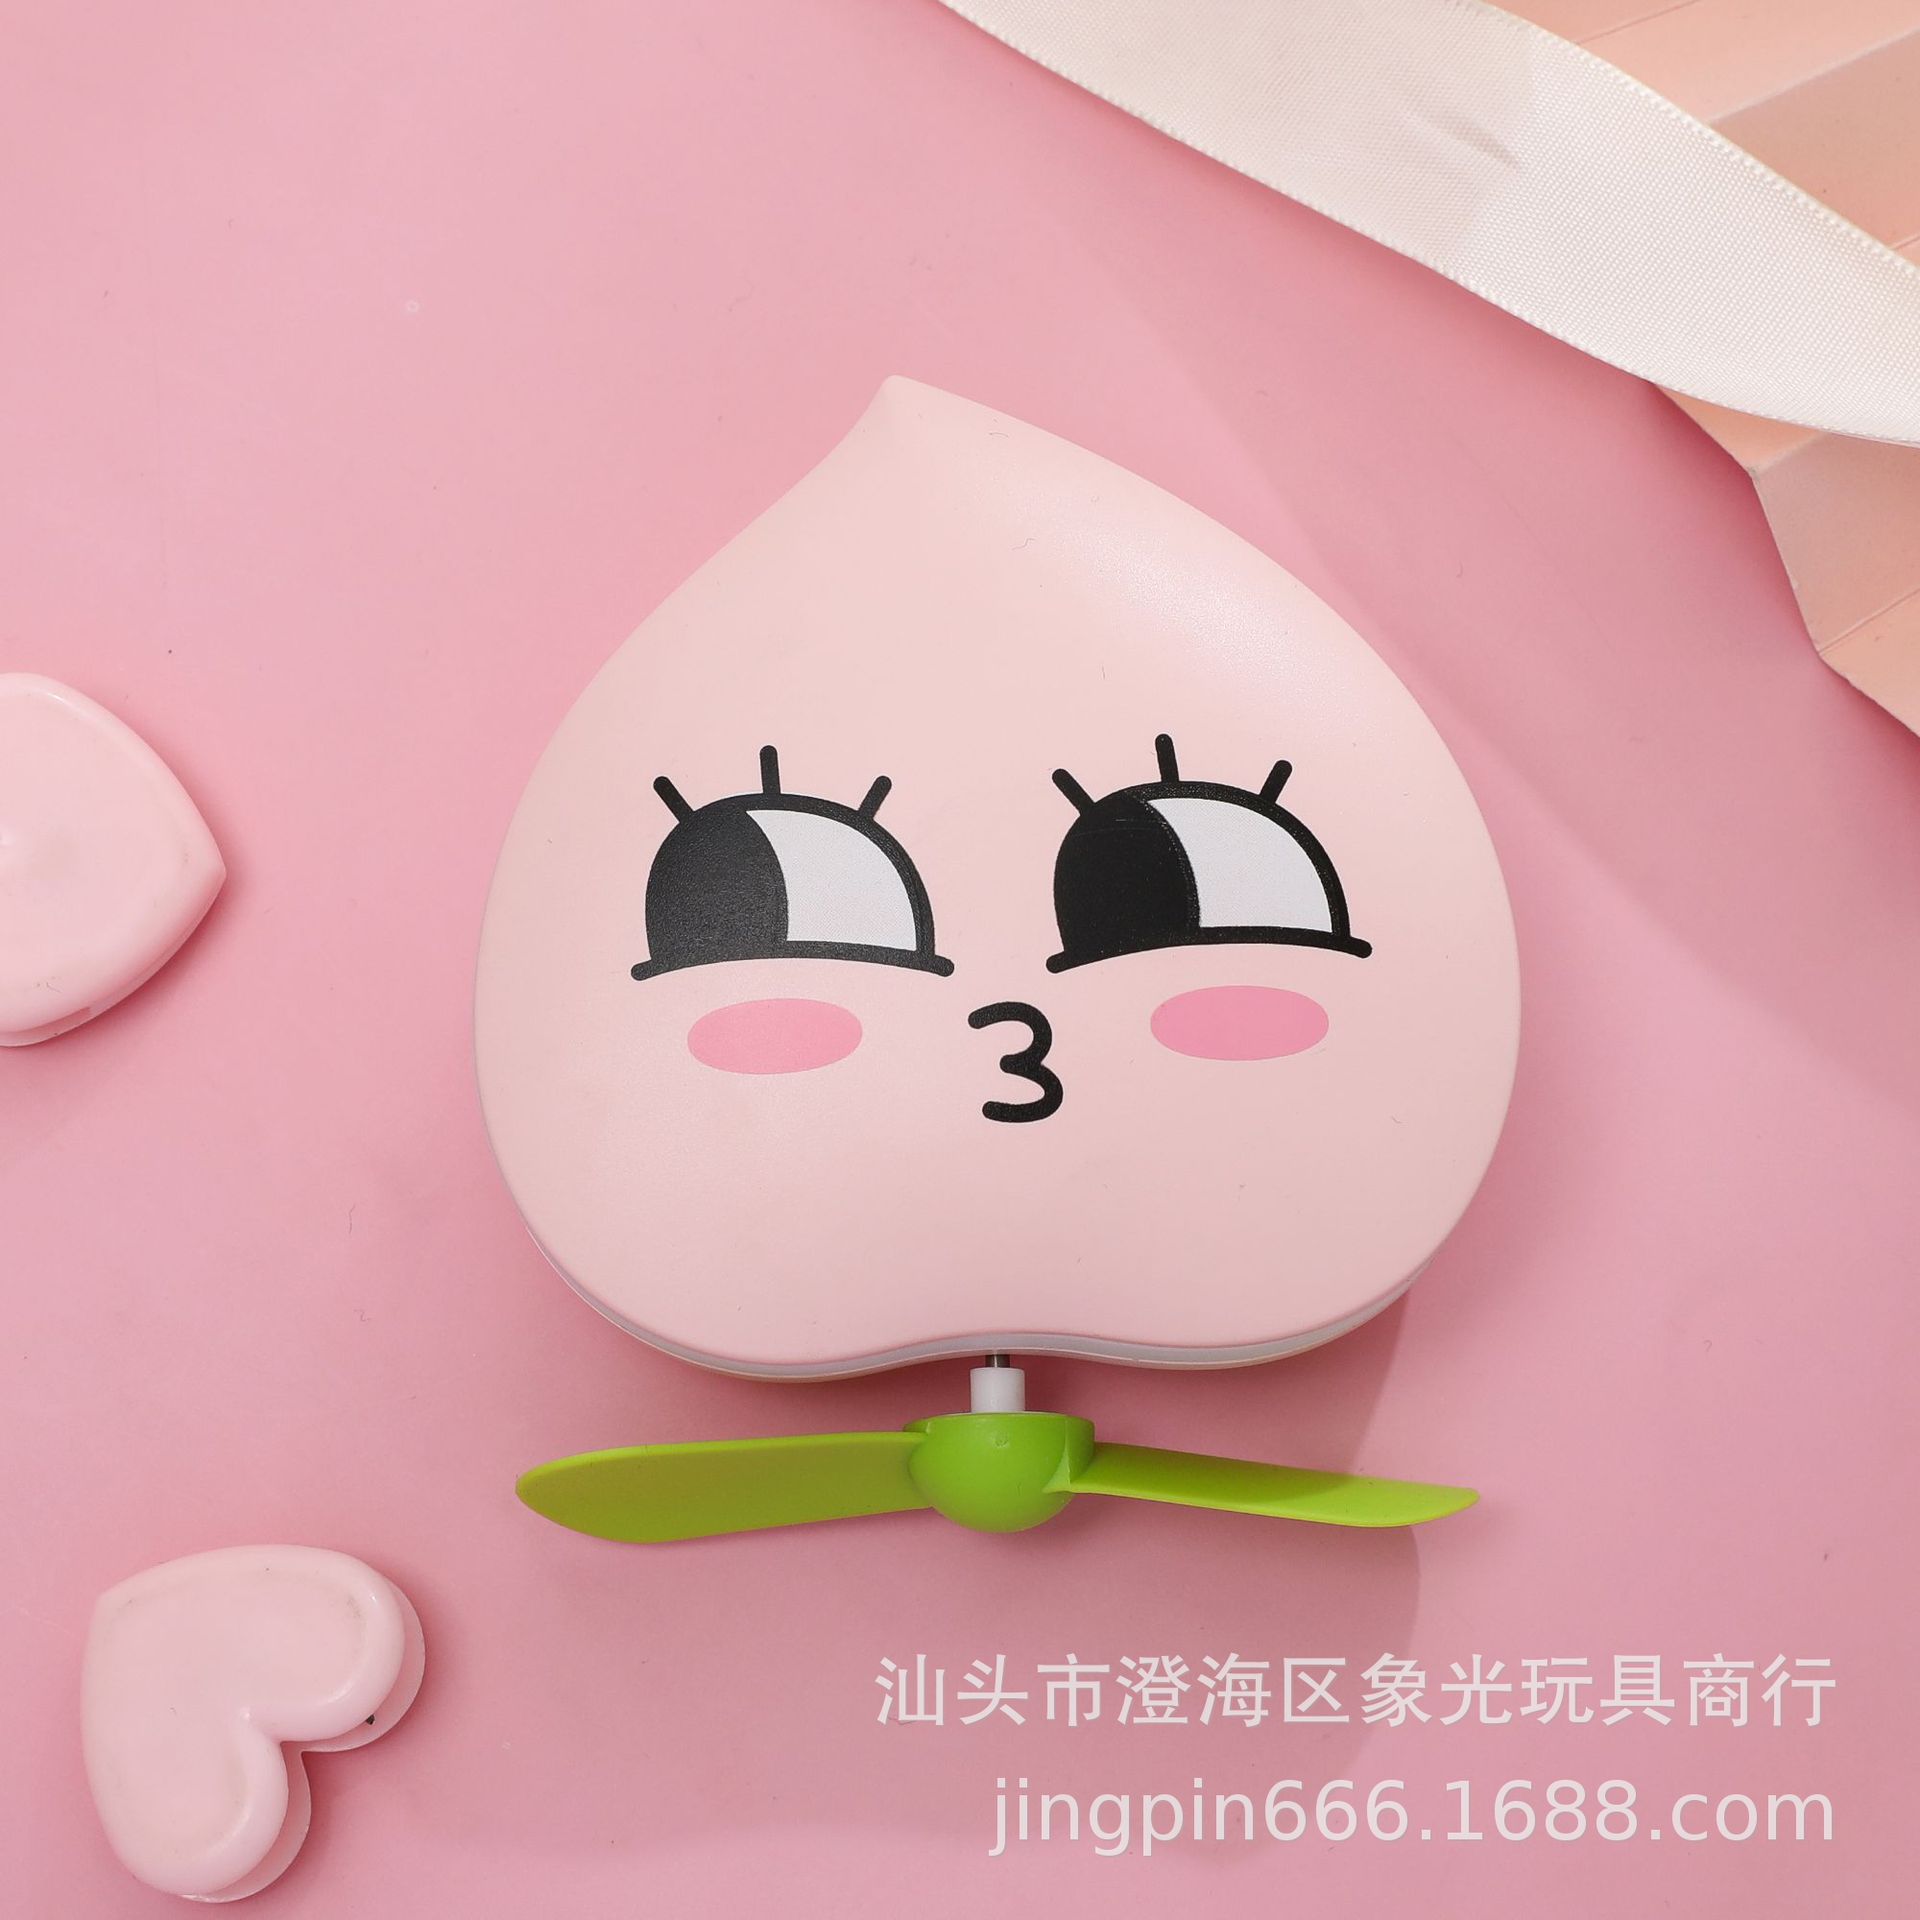 Internet Celebrity Fan Peach Junmei Makeup Mirror Pocket Fan USB Mini Handheld Fan LED Light Fill Makeup Mirror